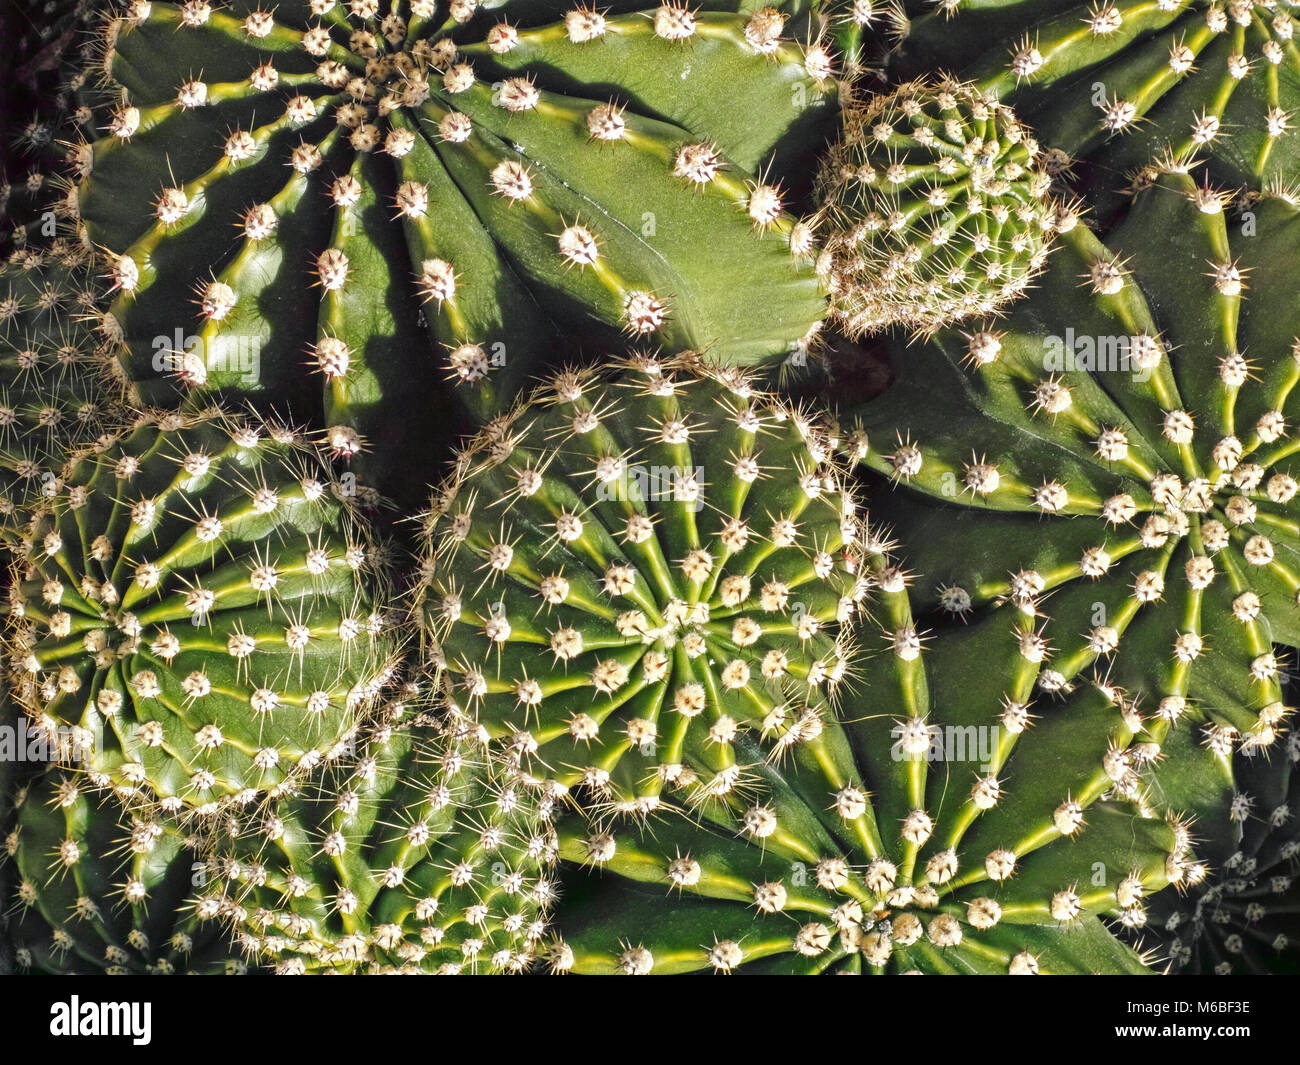 some specimen of cacti, echinopsis species Stock Photo